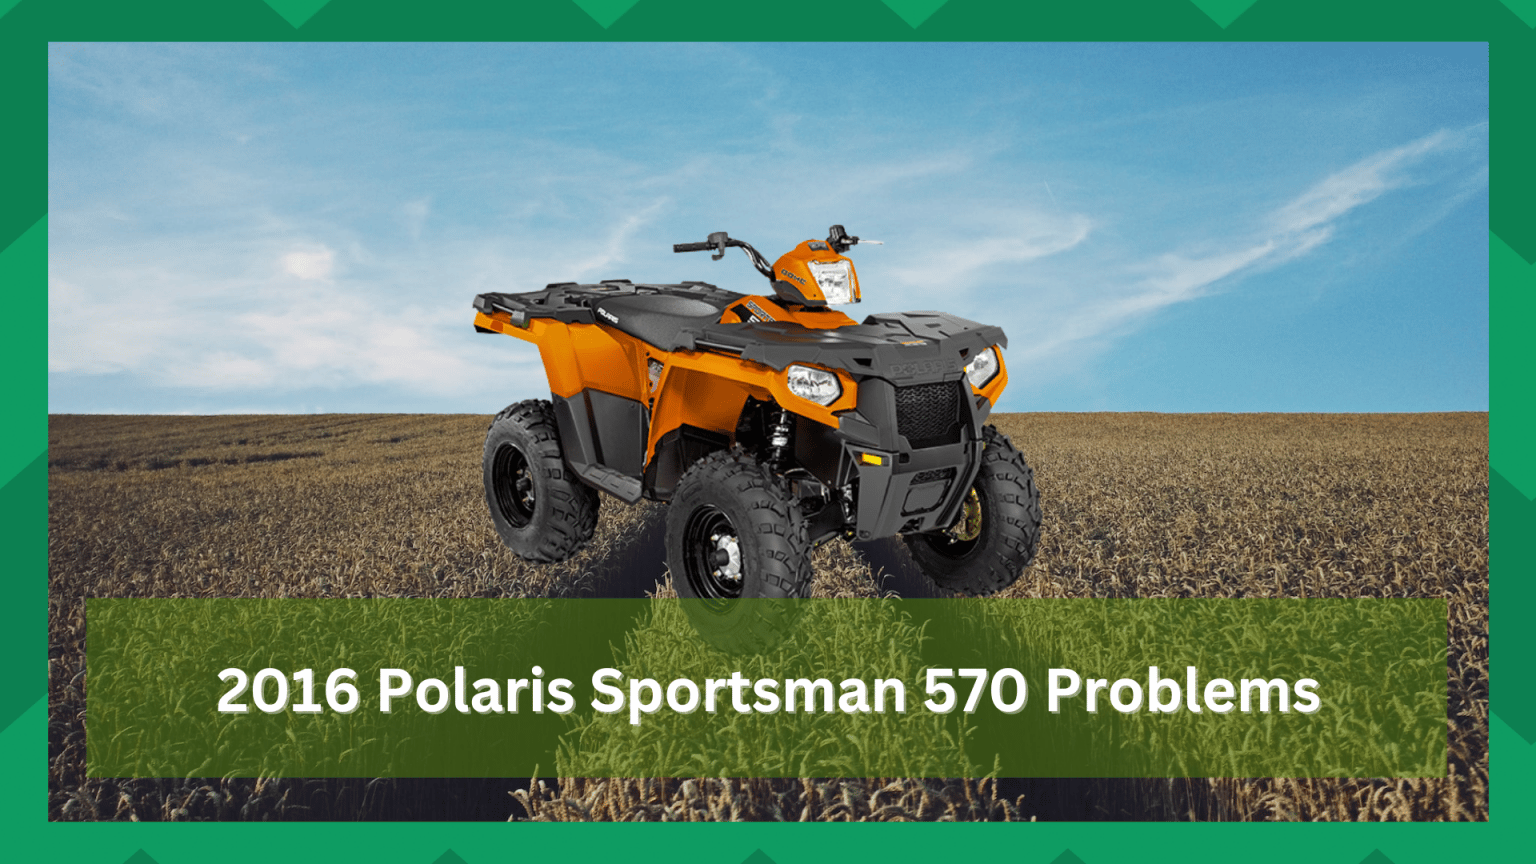 6 Annoying 2016 Polaris Sportsman 570 Problems Farmer Grows